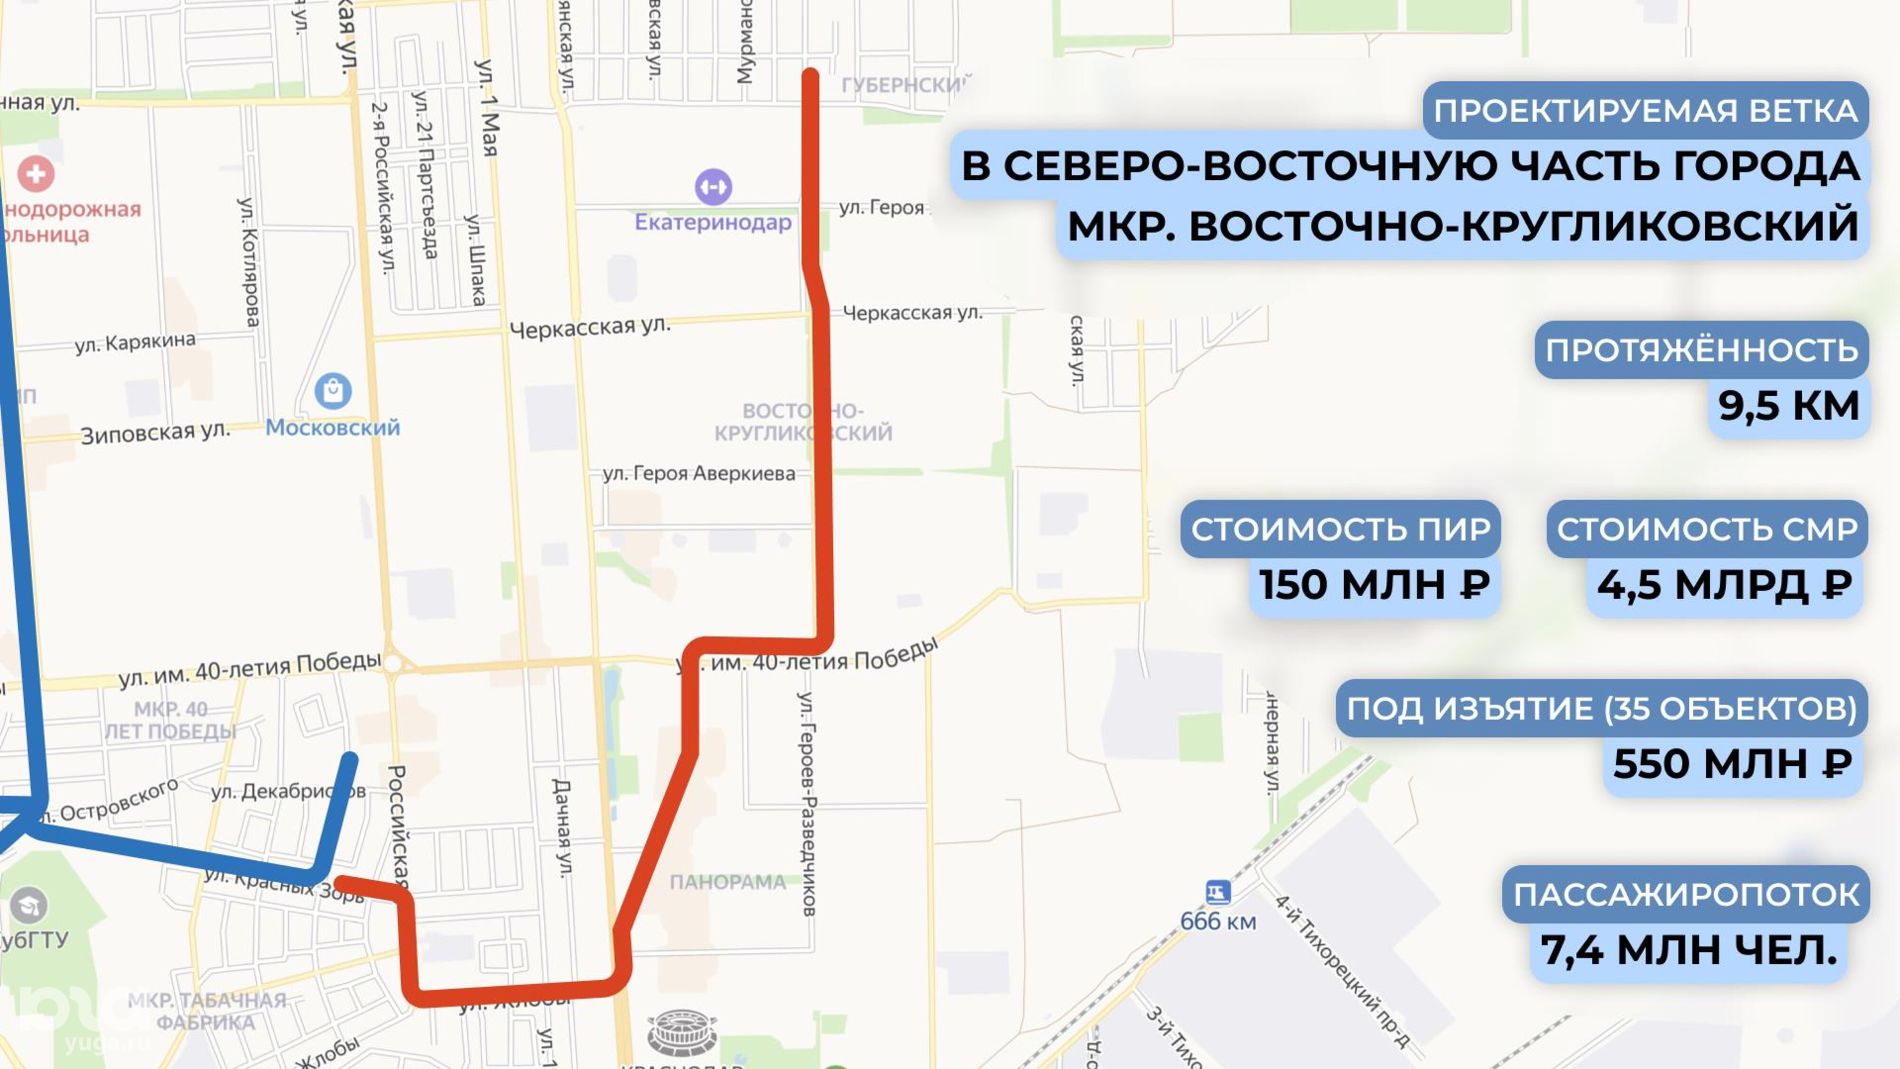 Схема трамвайной линии в Восточно-Кругликовский микрорайон © Графика пресс-службы администрации Краснодара